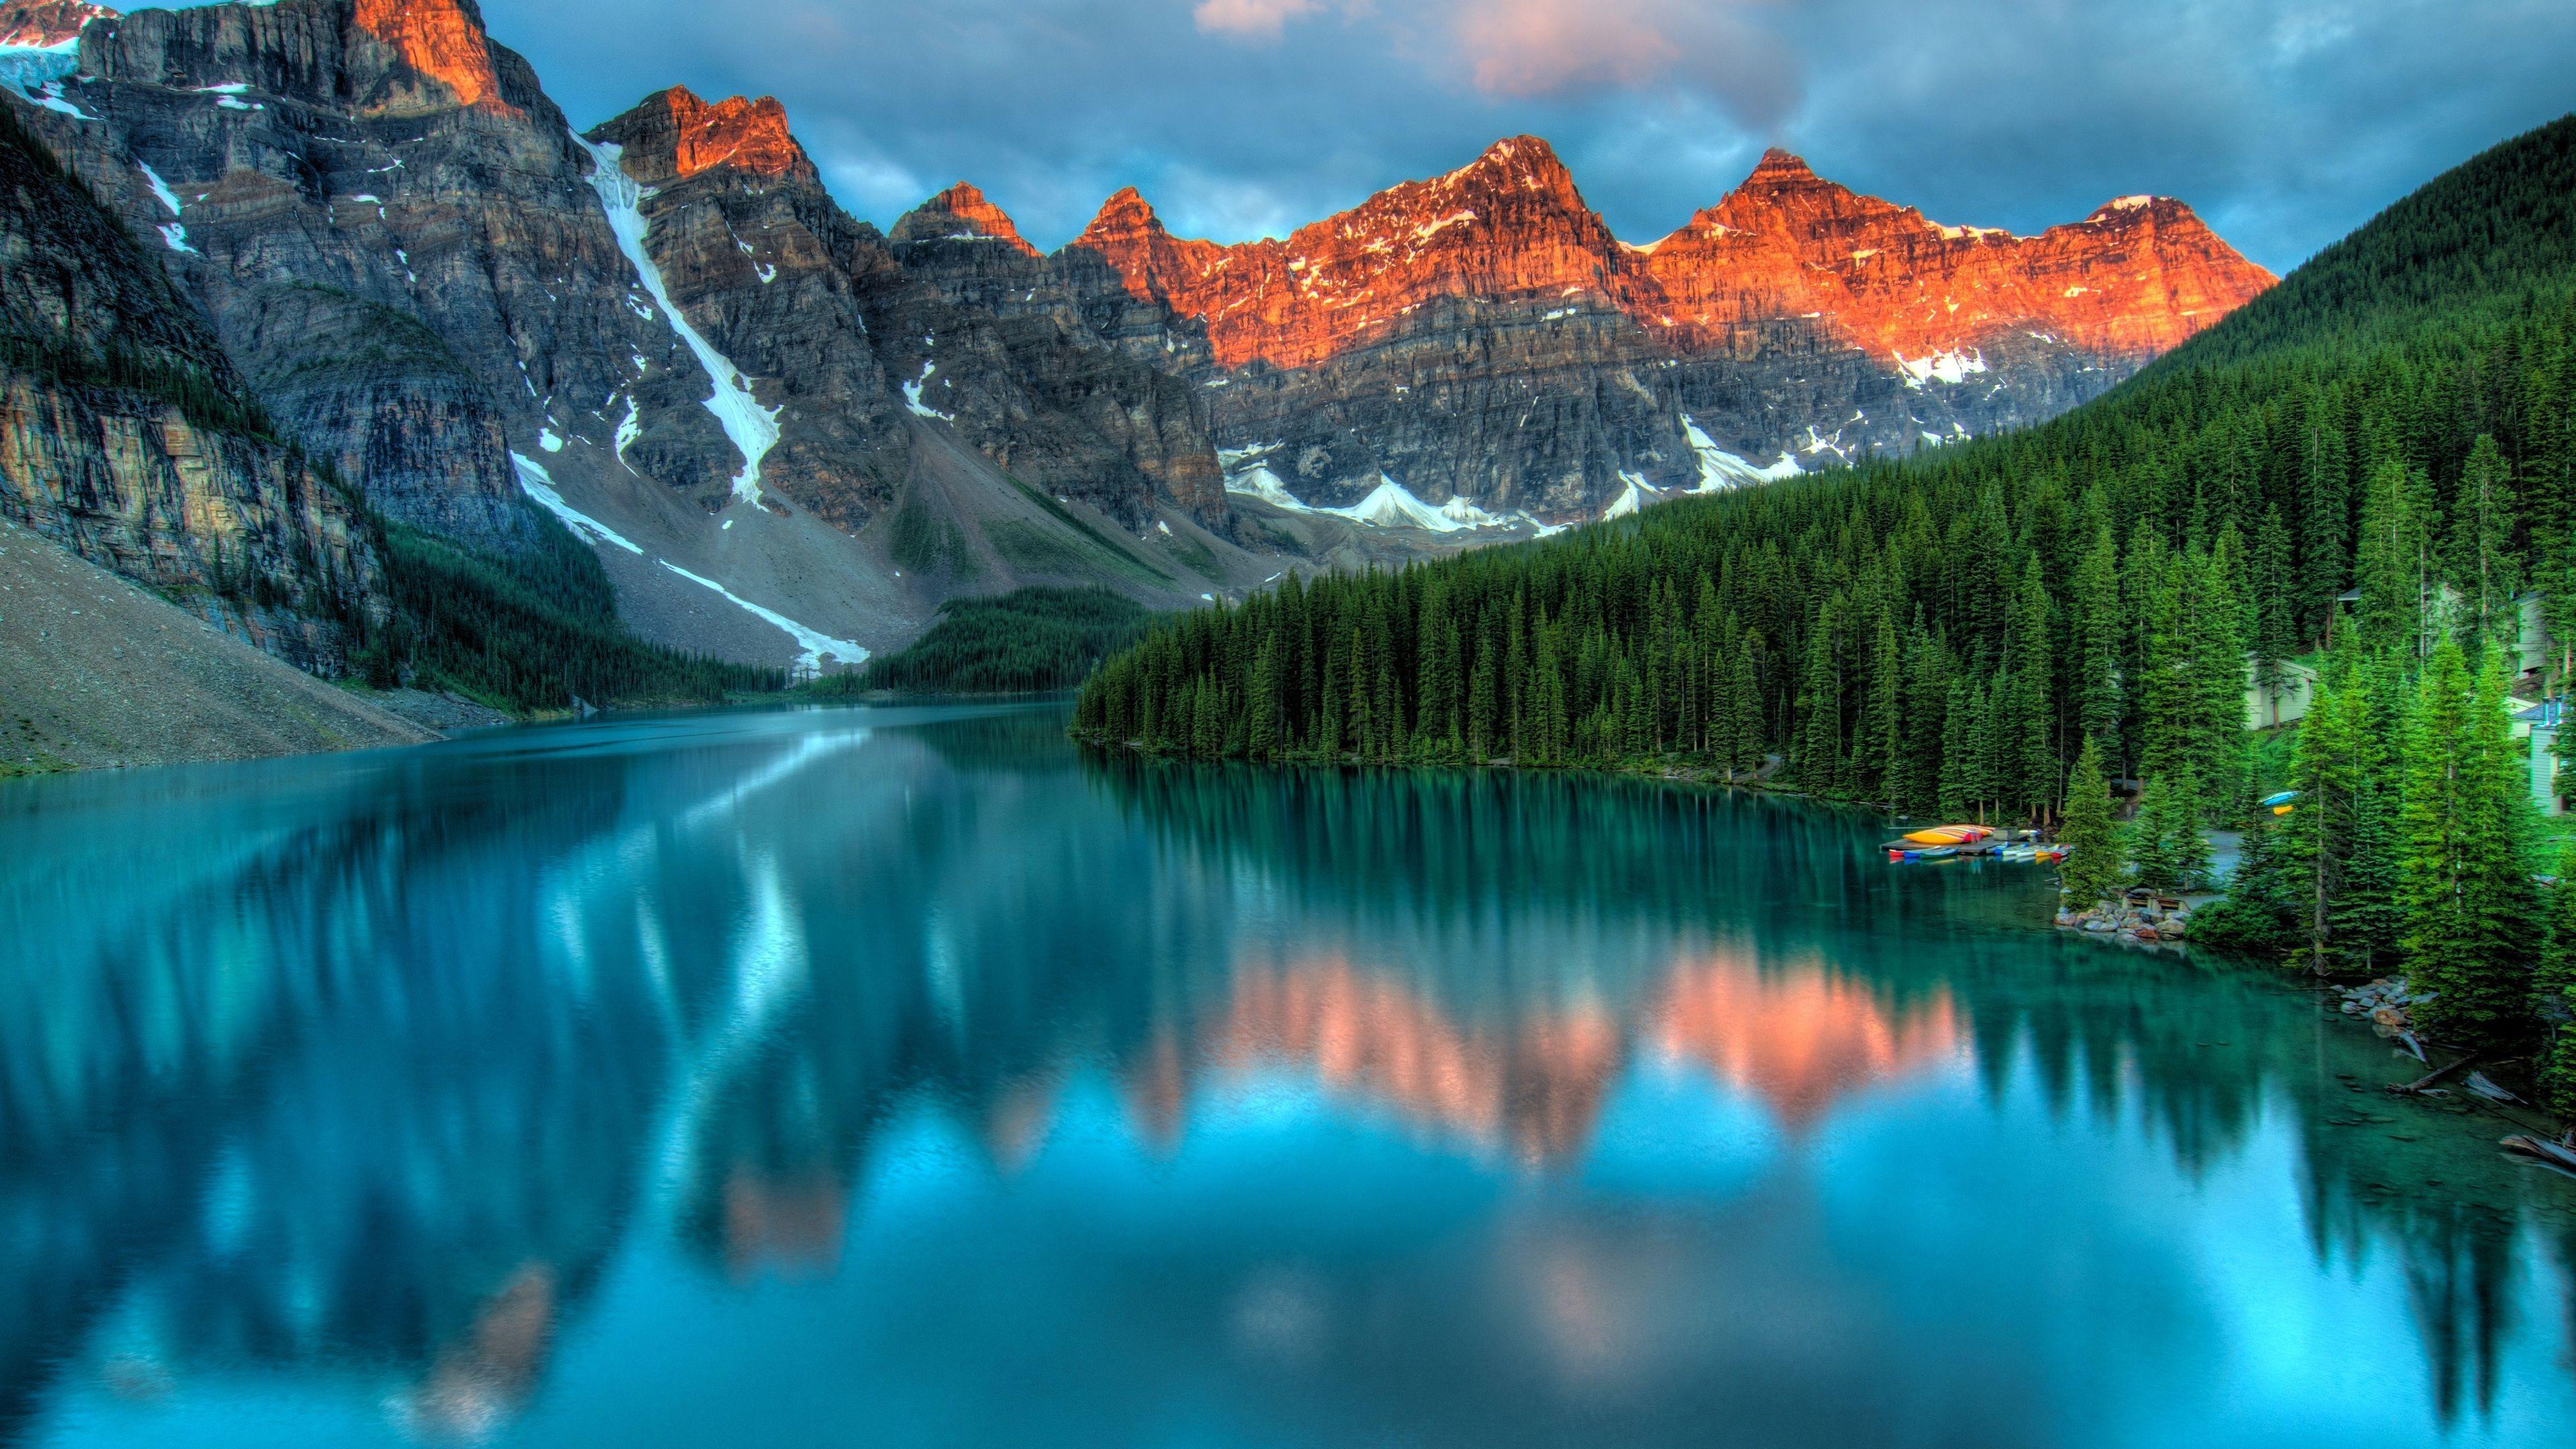 3840x2160 Hình nền thế giới 4k Alberta Canada, Hình nền thiên nhiên, Hình nền núi, Hình nền hồ, Hình nền hd, Ca.  Hình nền núi, Hình nền thế giới, Hồ Canada